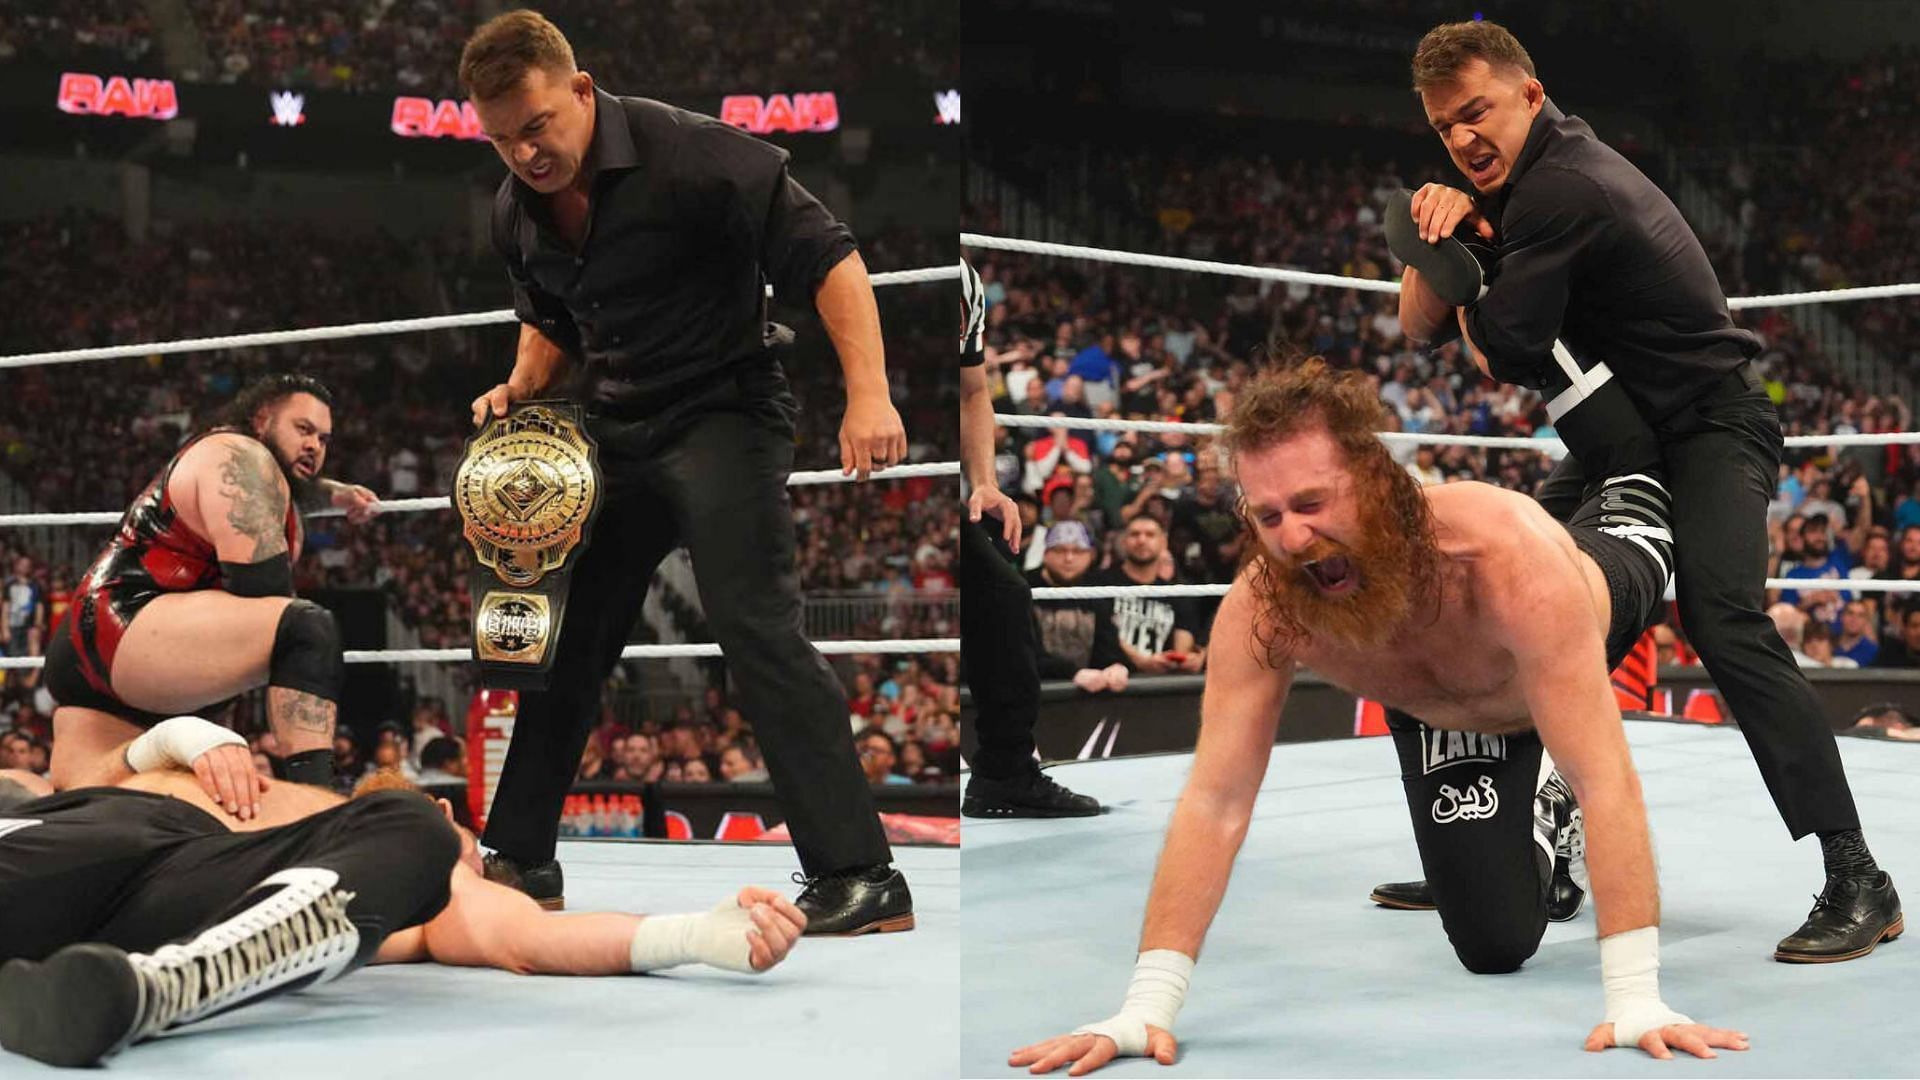 Chad Gable attacked Sami Zayn on WWE RAW